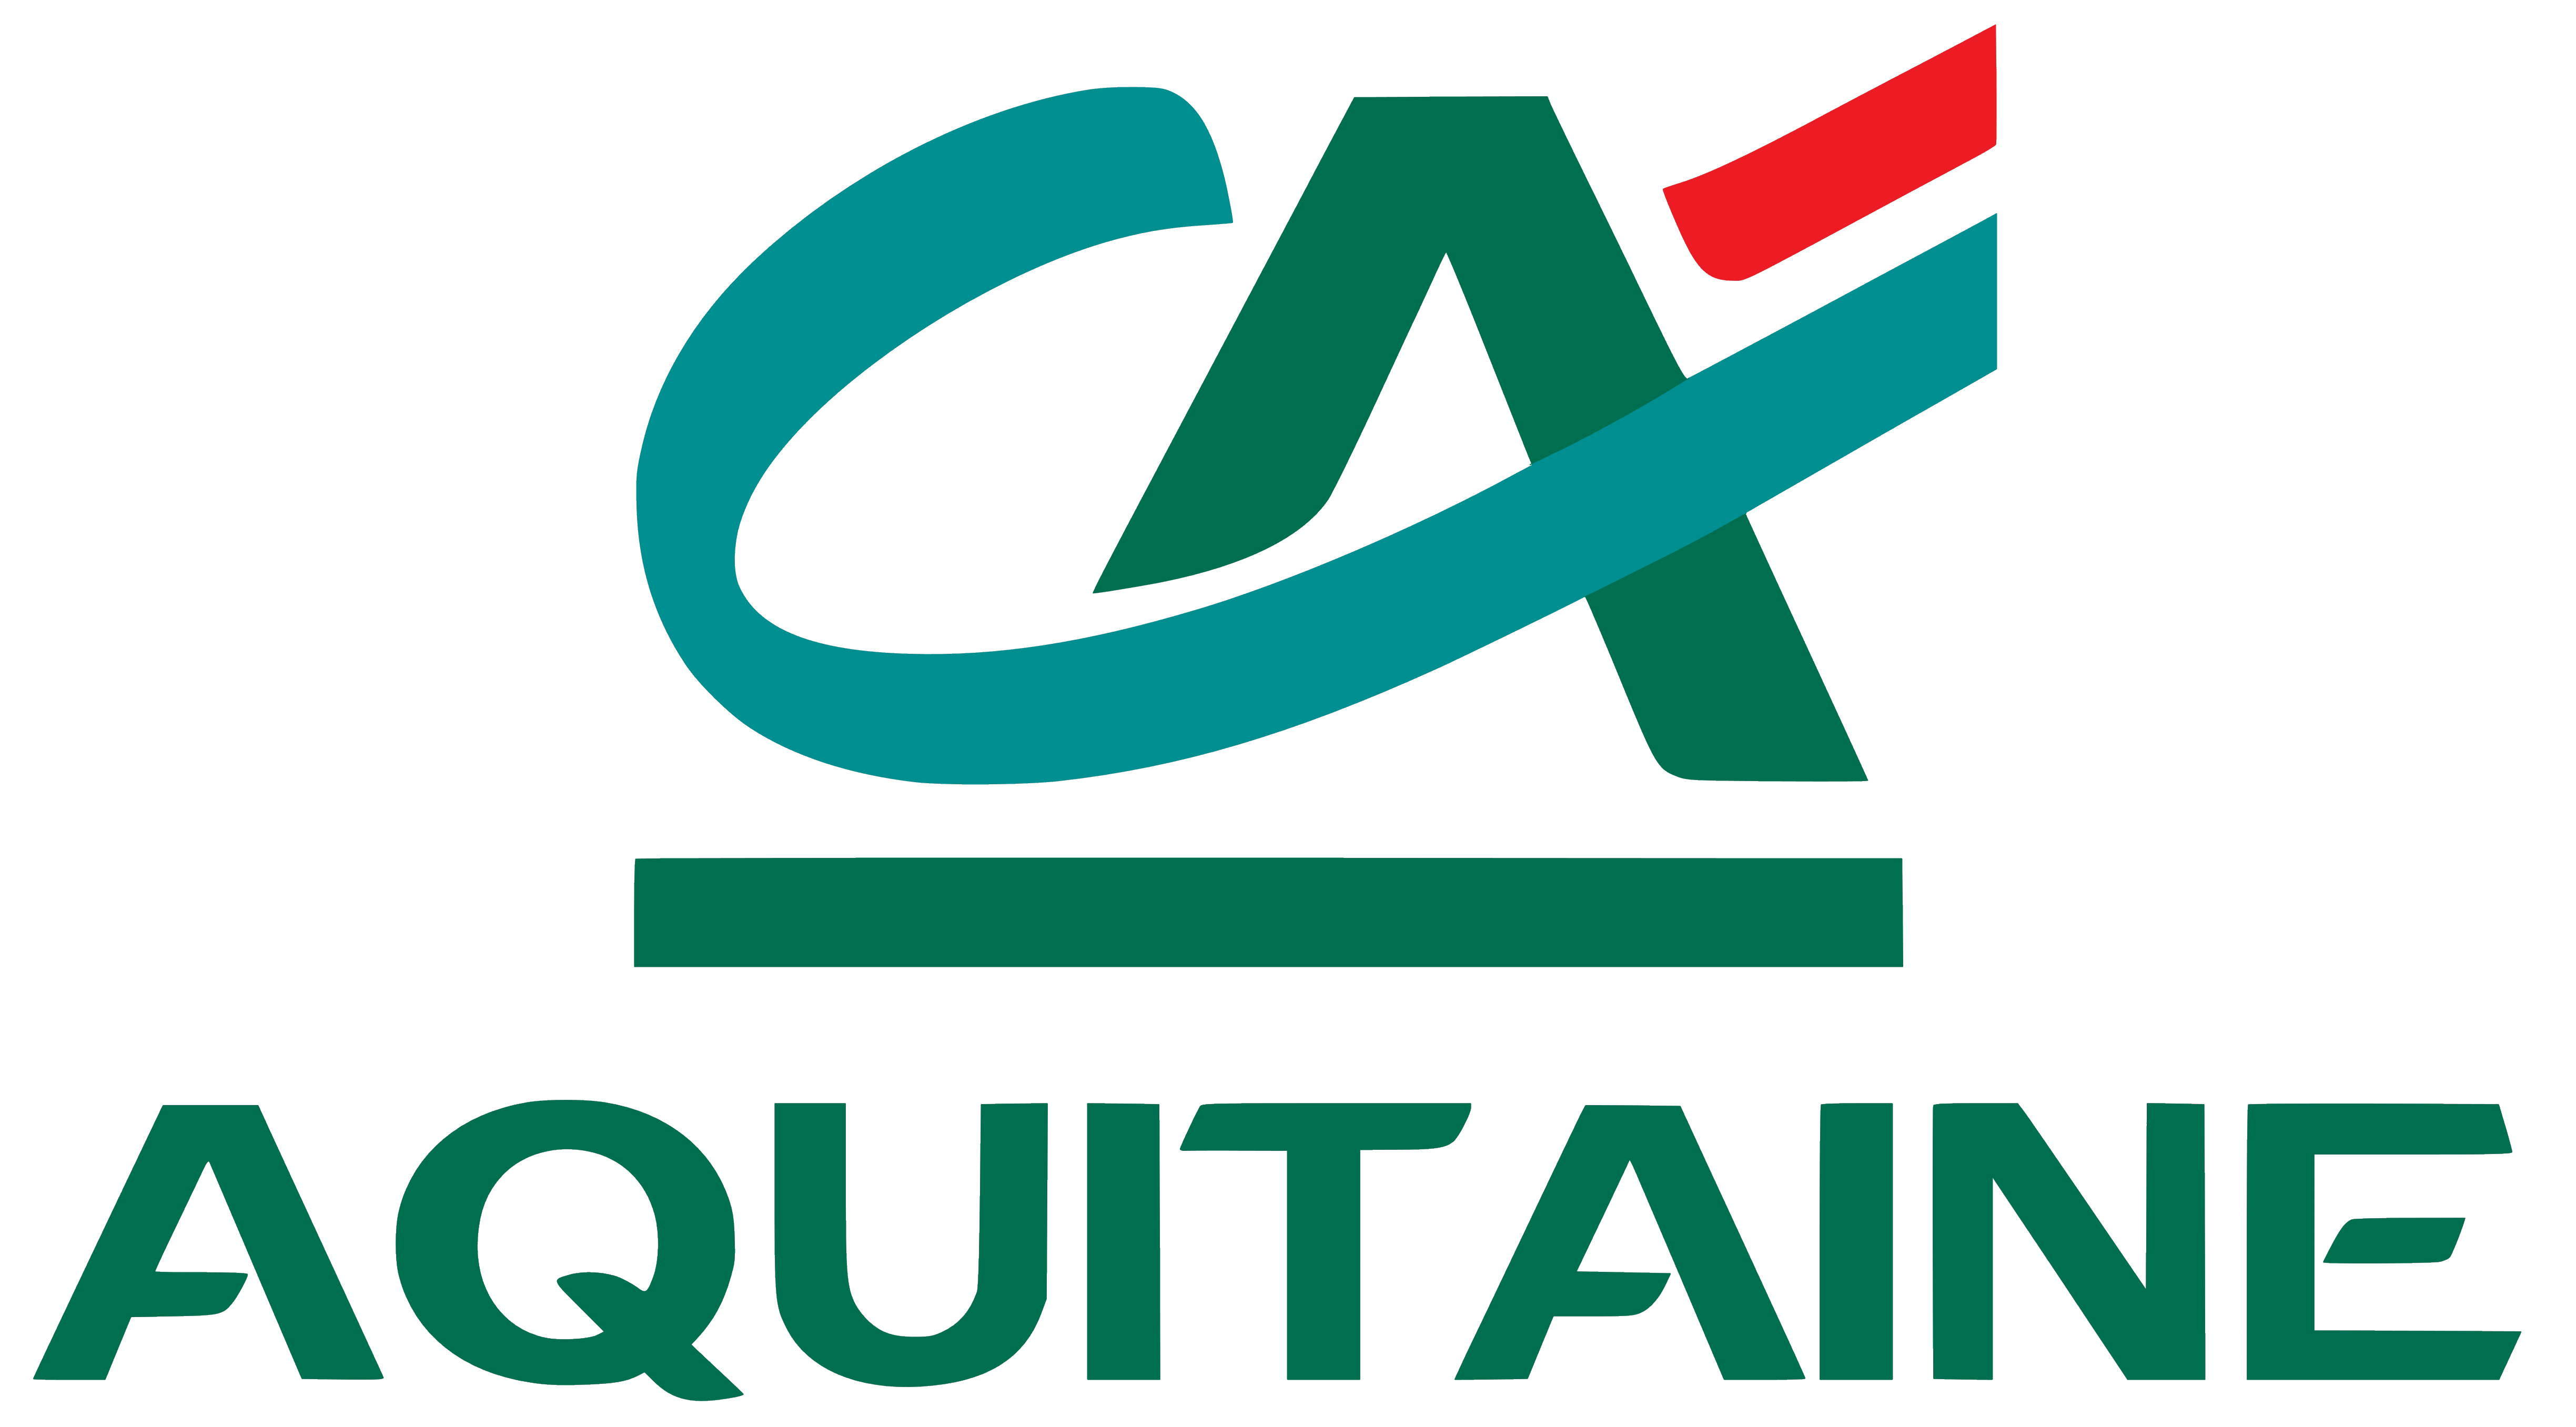 CA Aquitaine Brand Logo